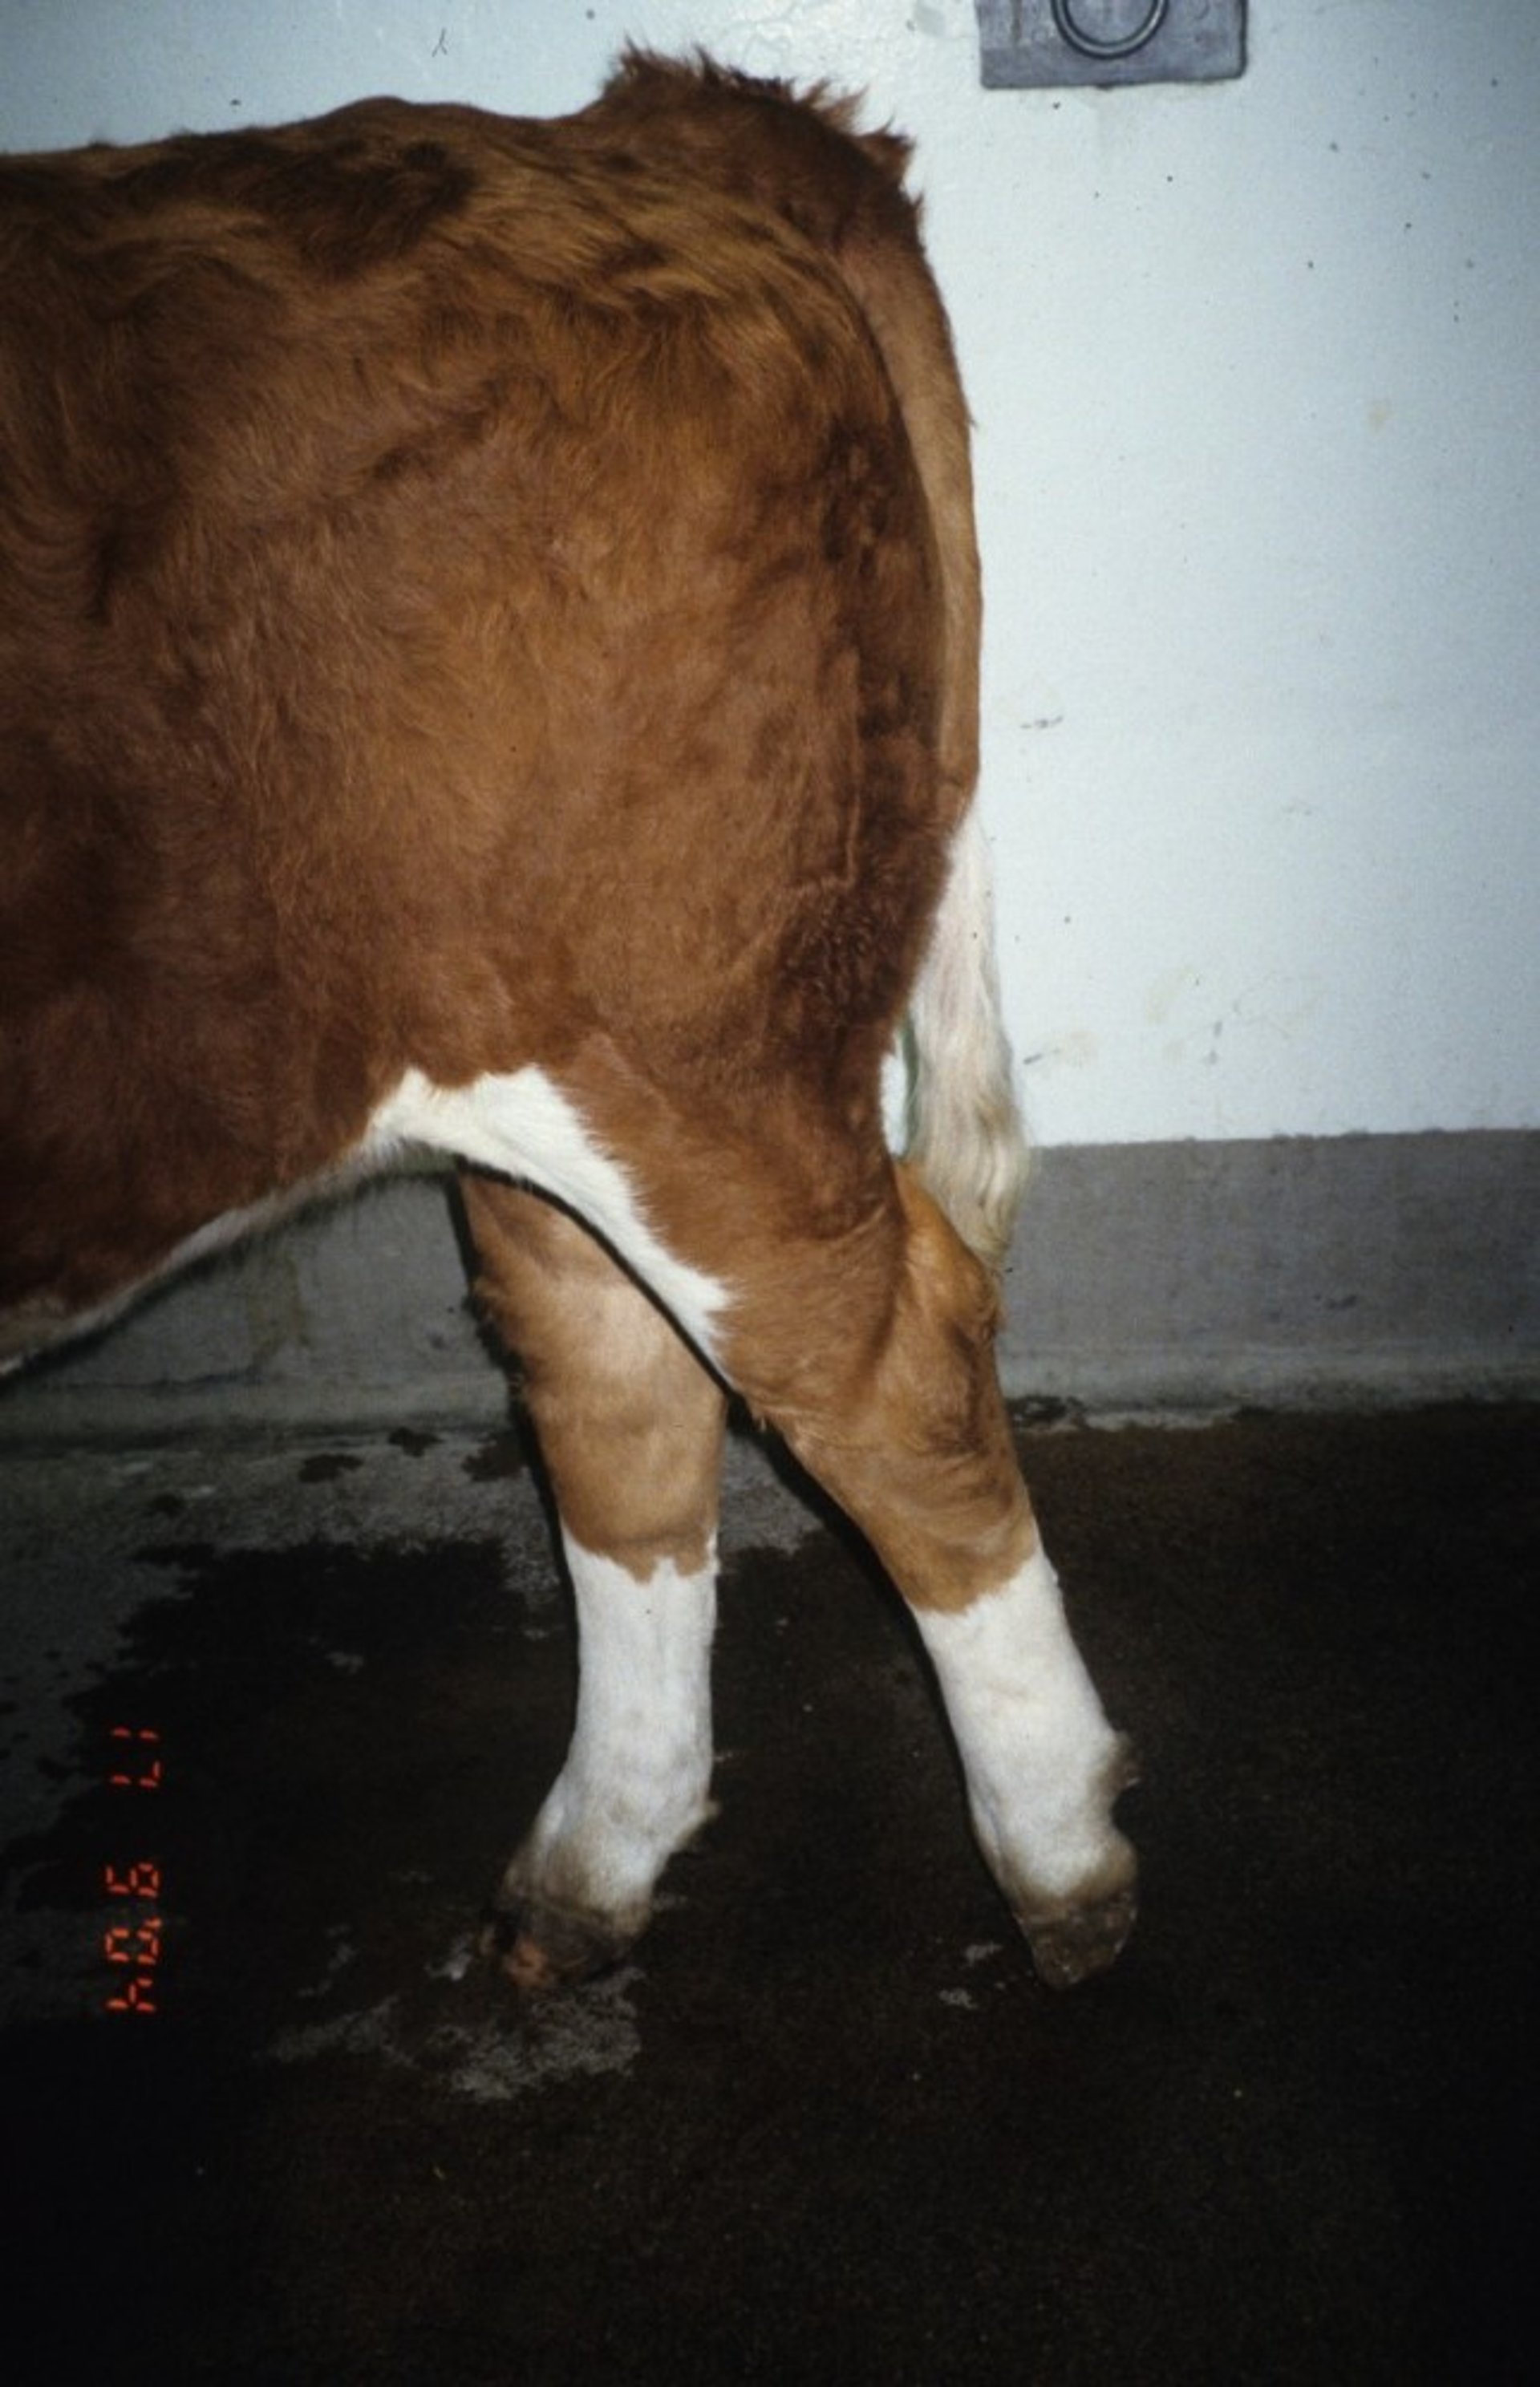 Spastic paresis, calf